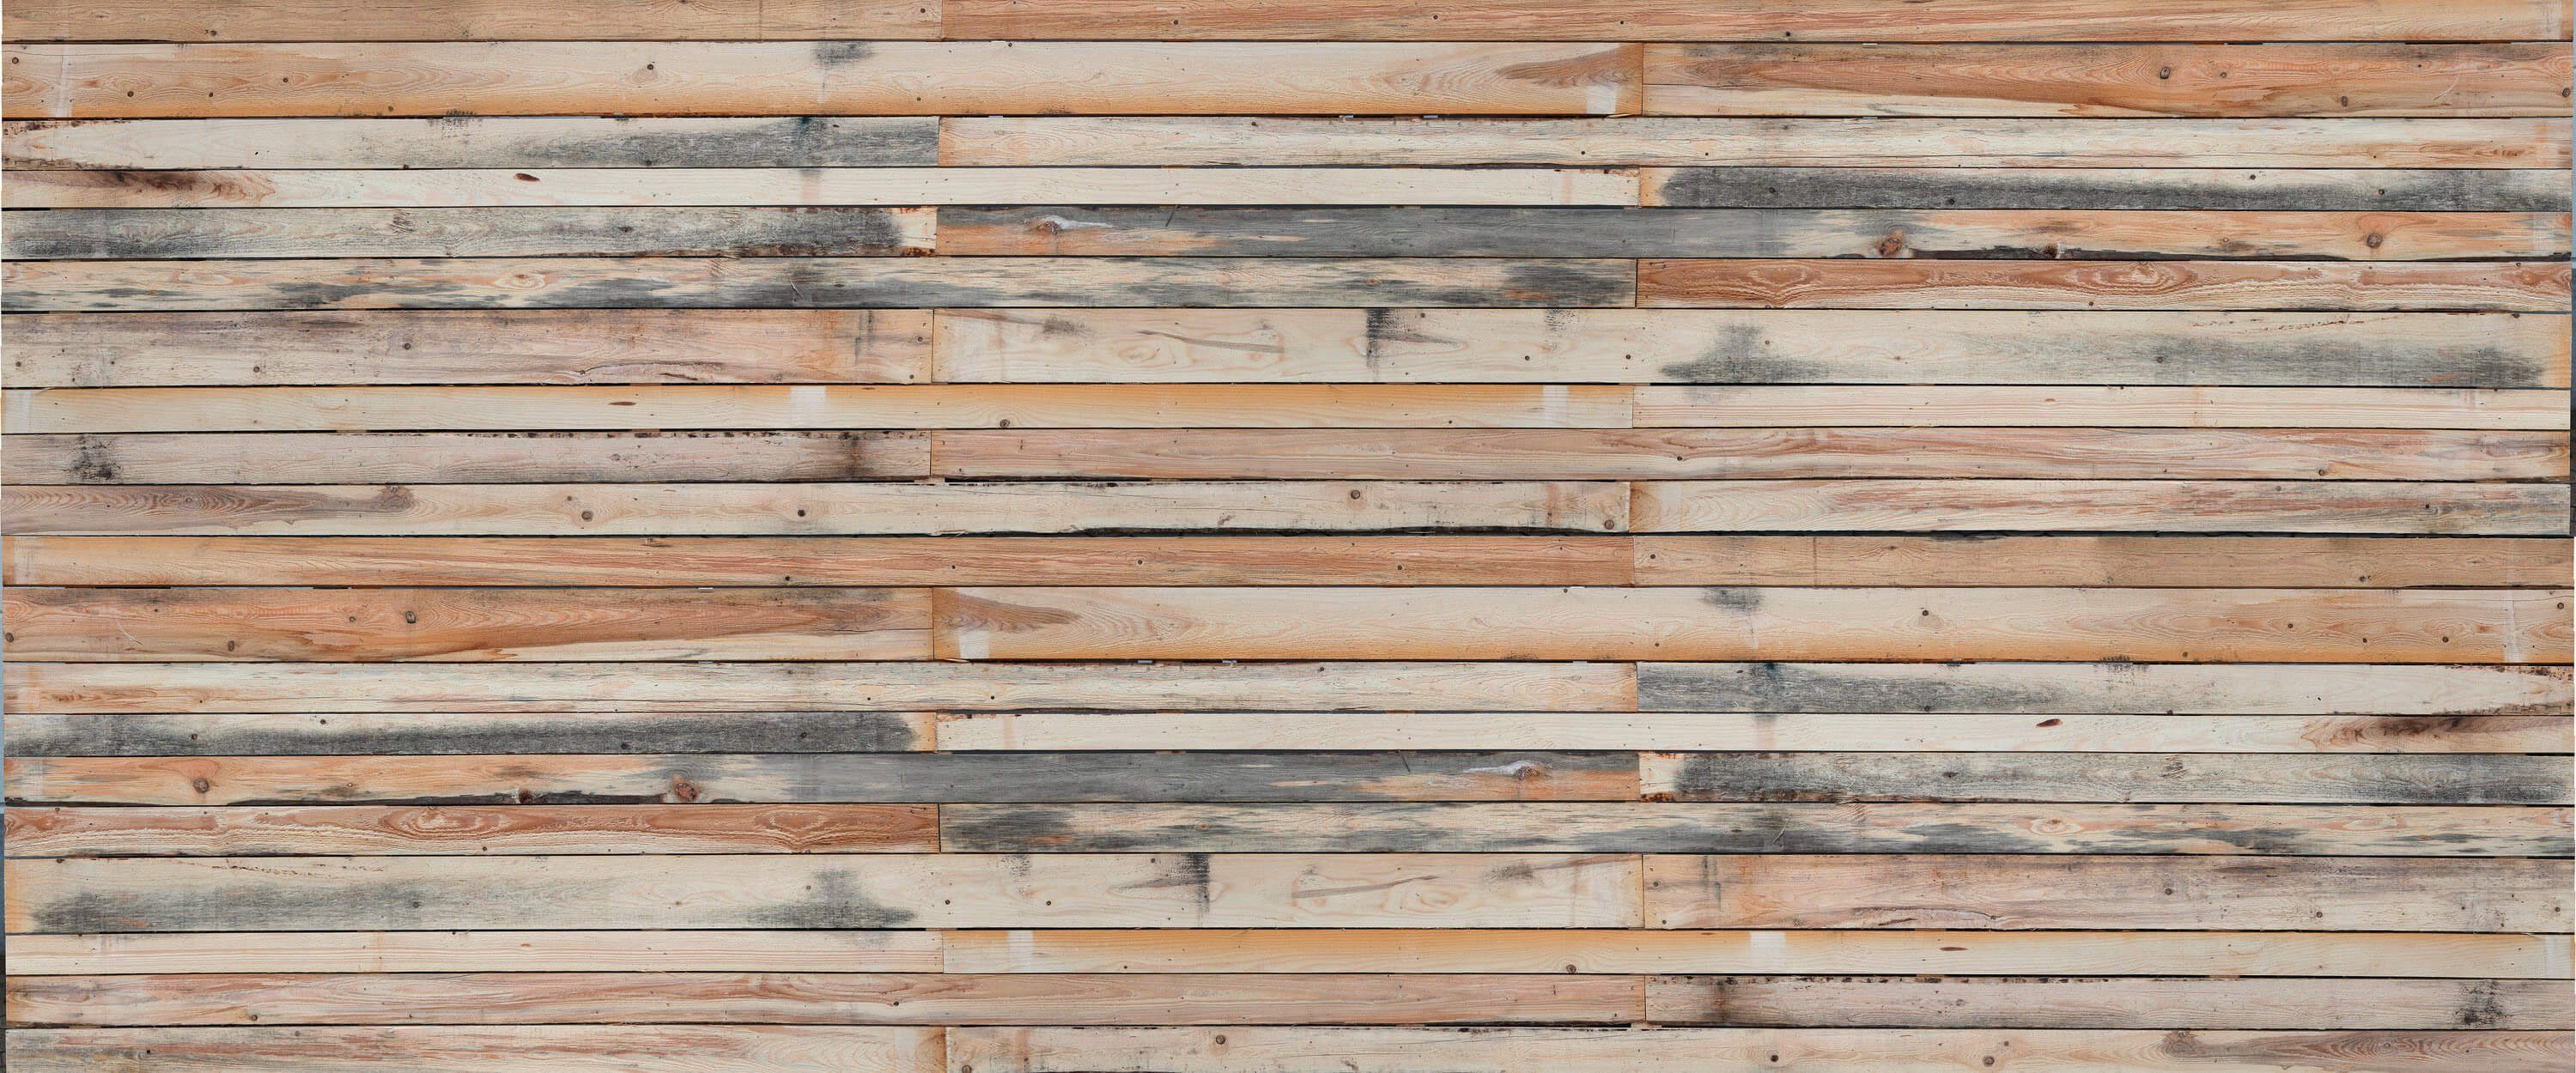 KUNSTLOFT Vliestapete Wood 6x2.5 m, leicht glänzend, lichtbeständige Design Tapete